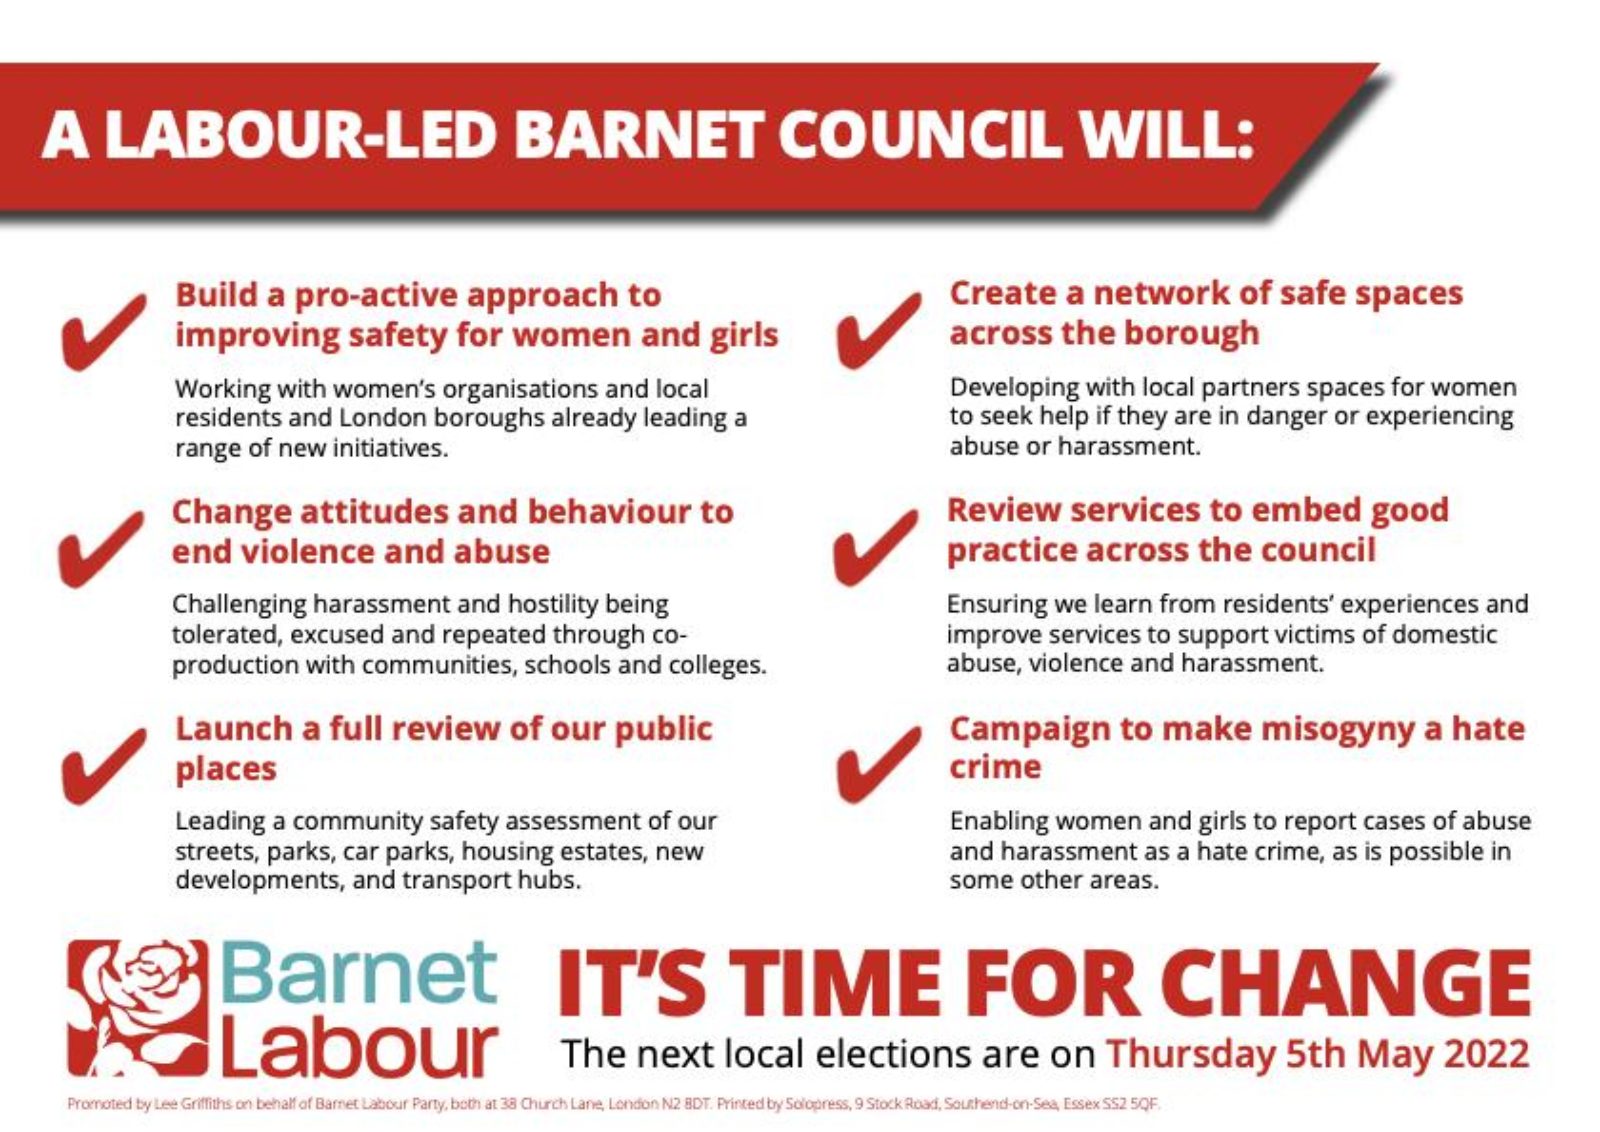 Barnet Labour Leaflet with Pledges on Women